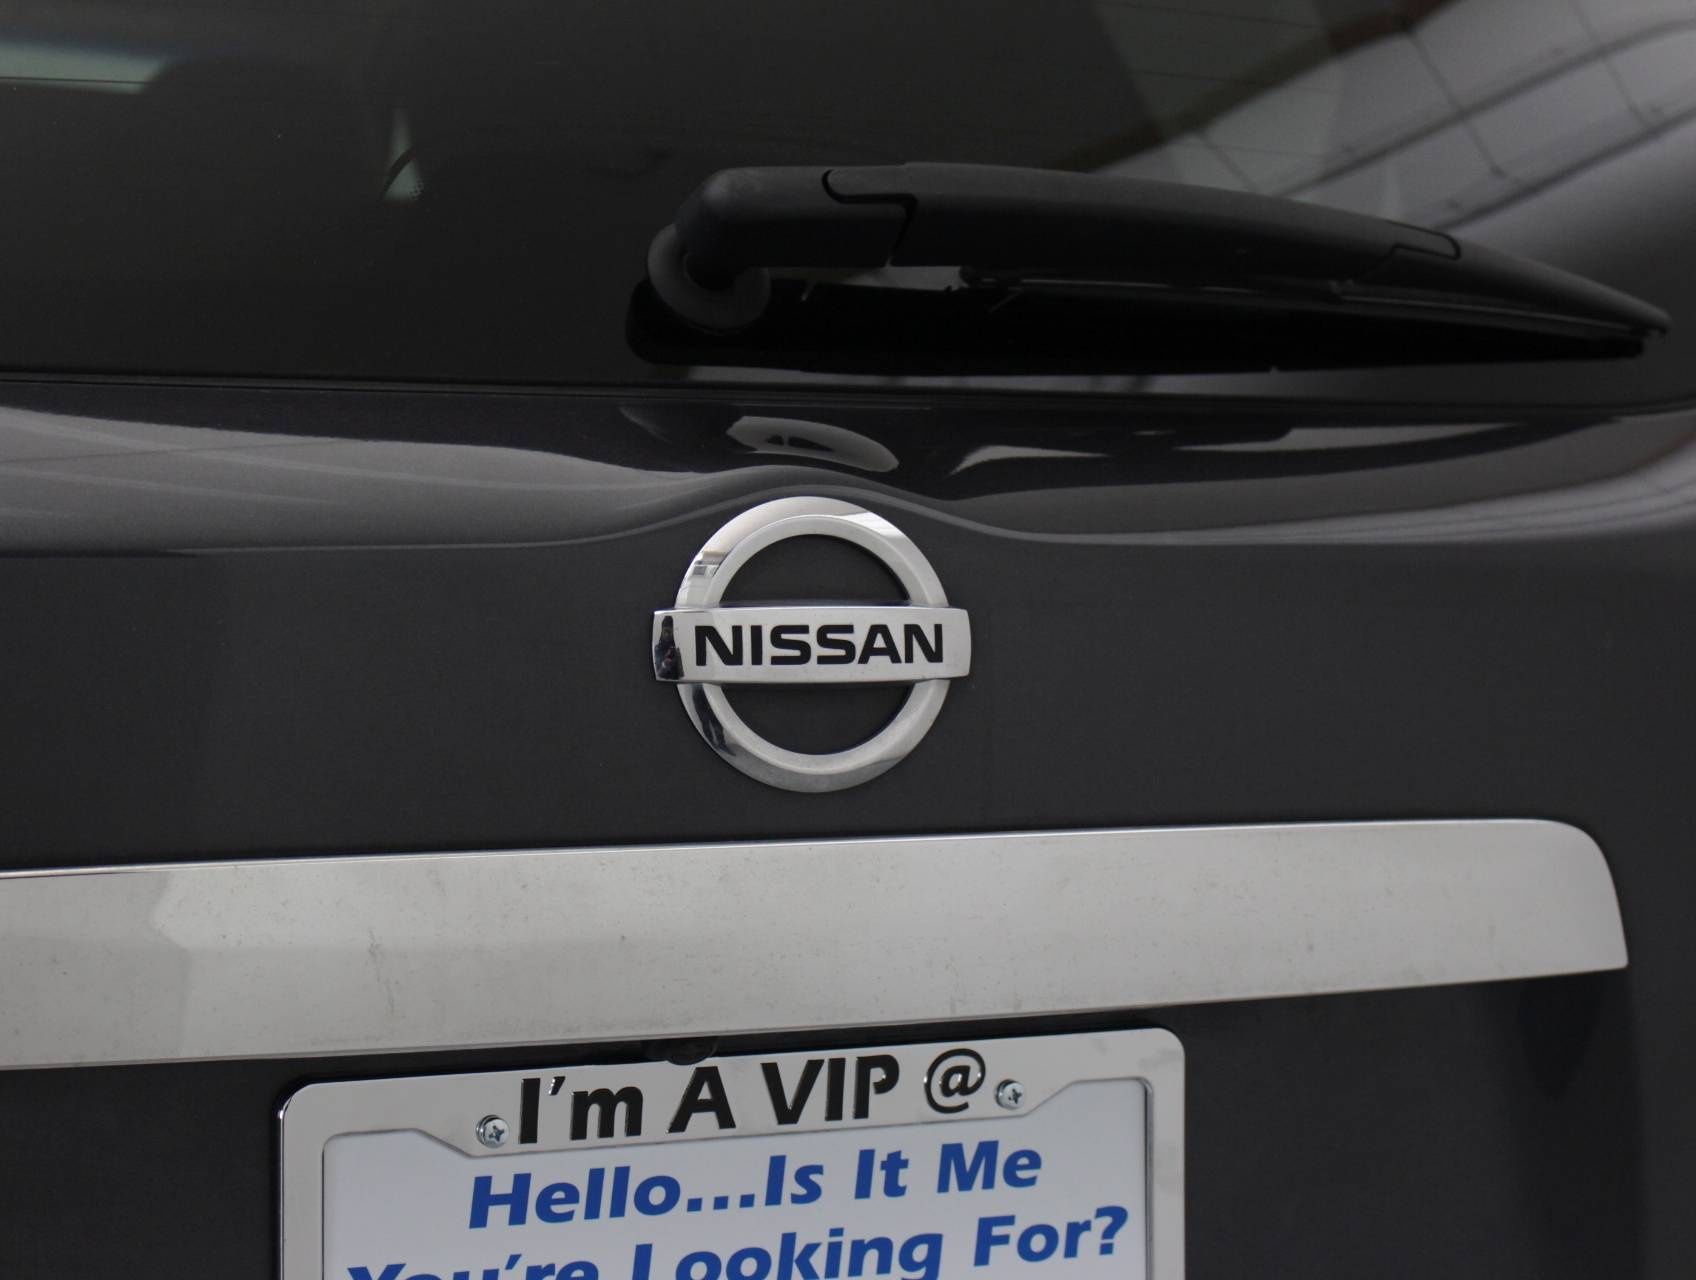 Florida Fine Cars - Used NISSAN PATHFINDER 2014 MIAMI Sv